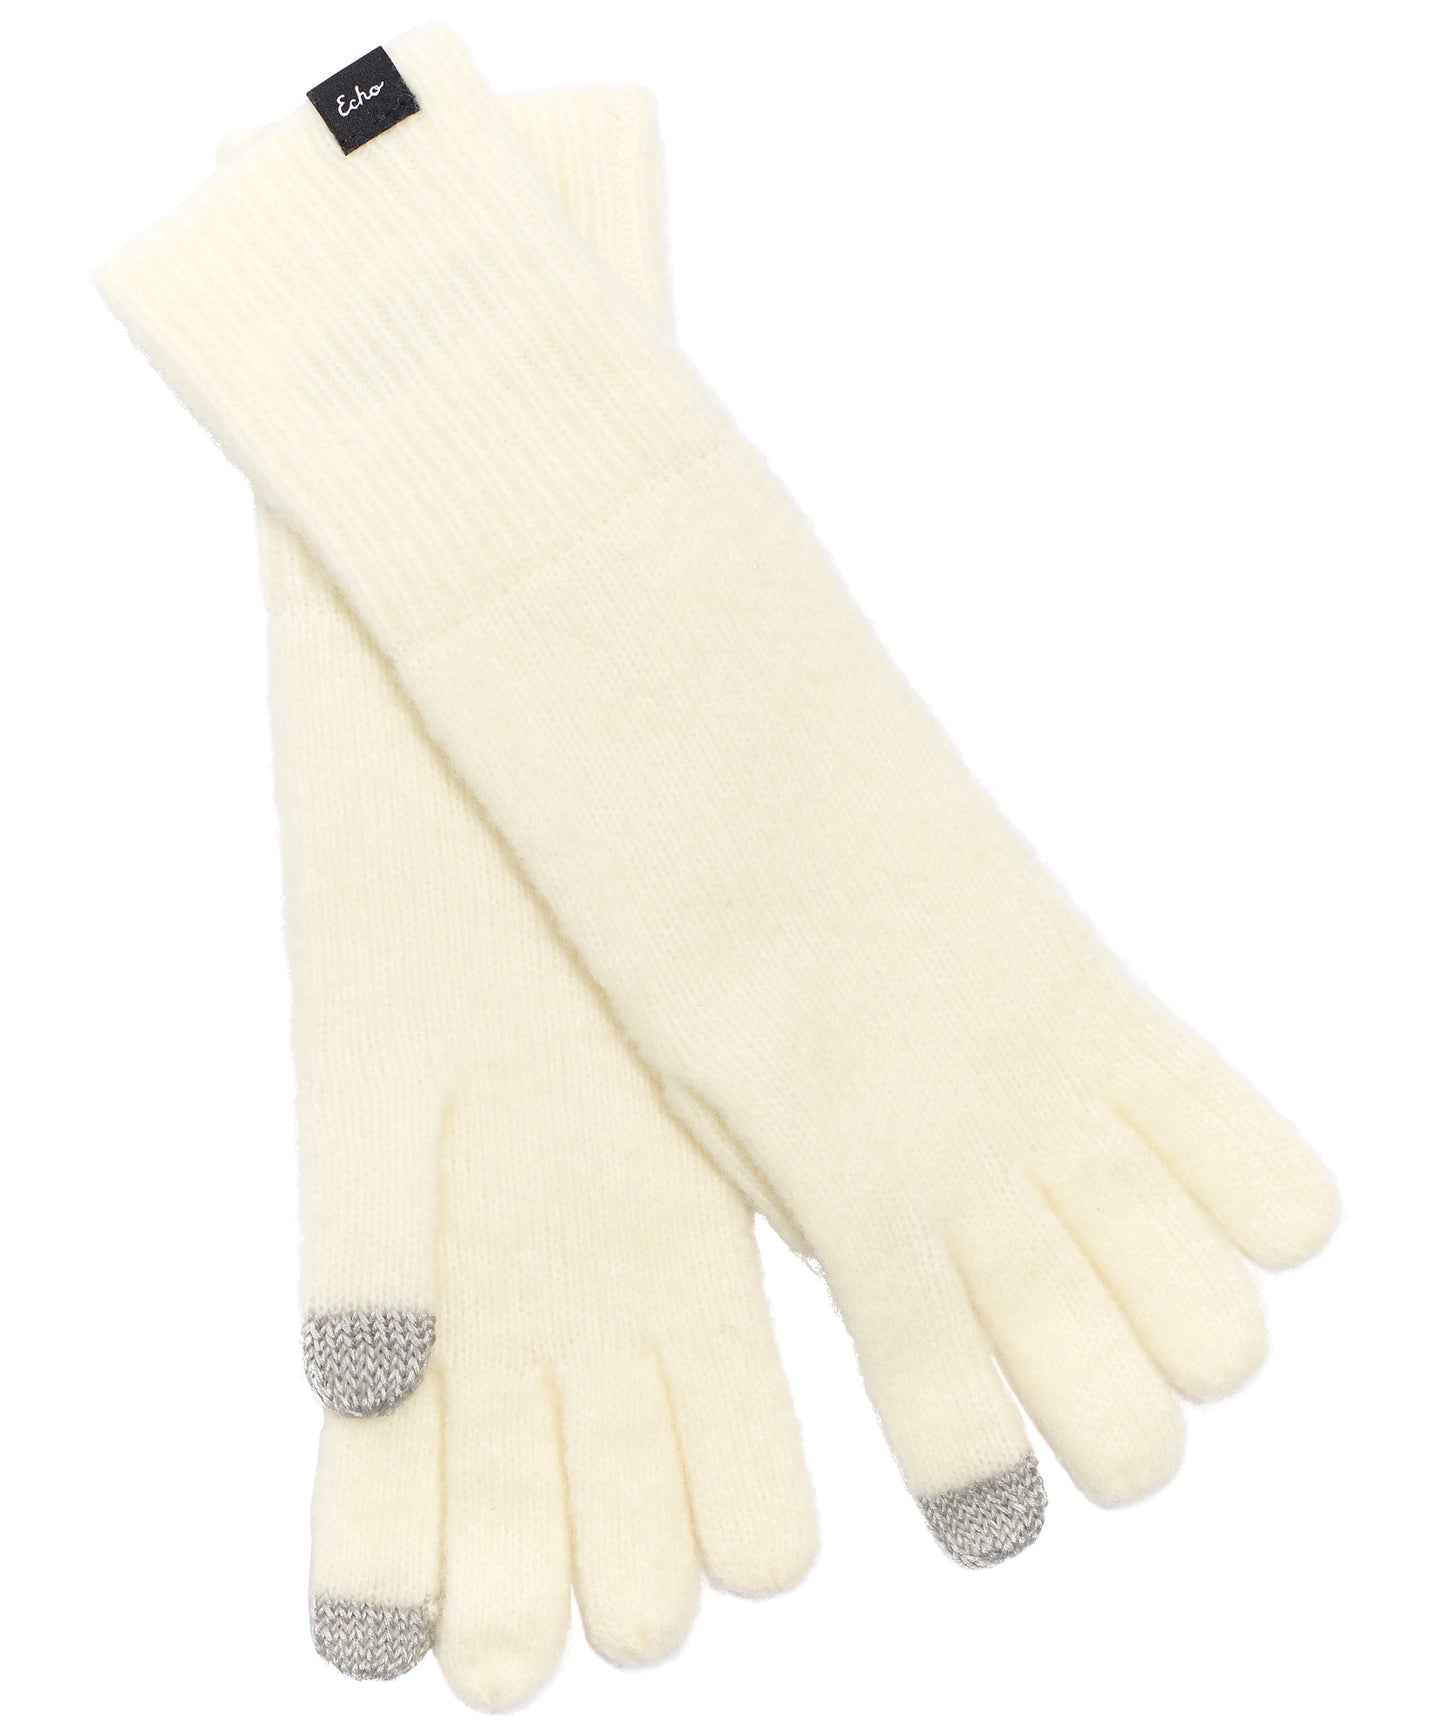 Rib Cuff Glove in color Cream